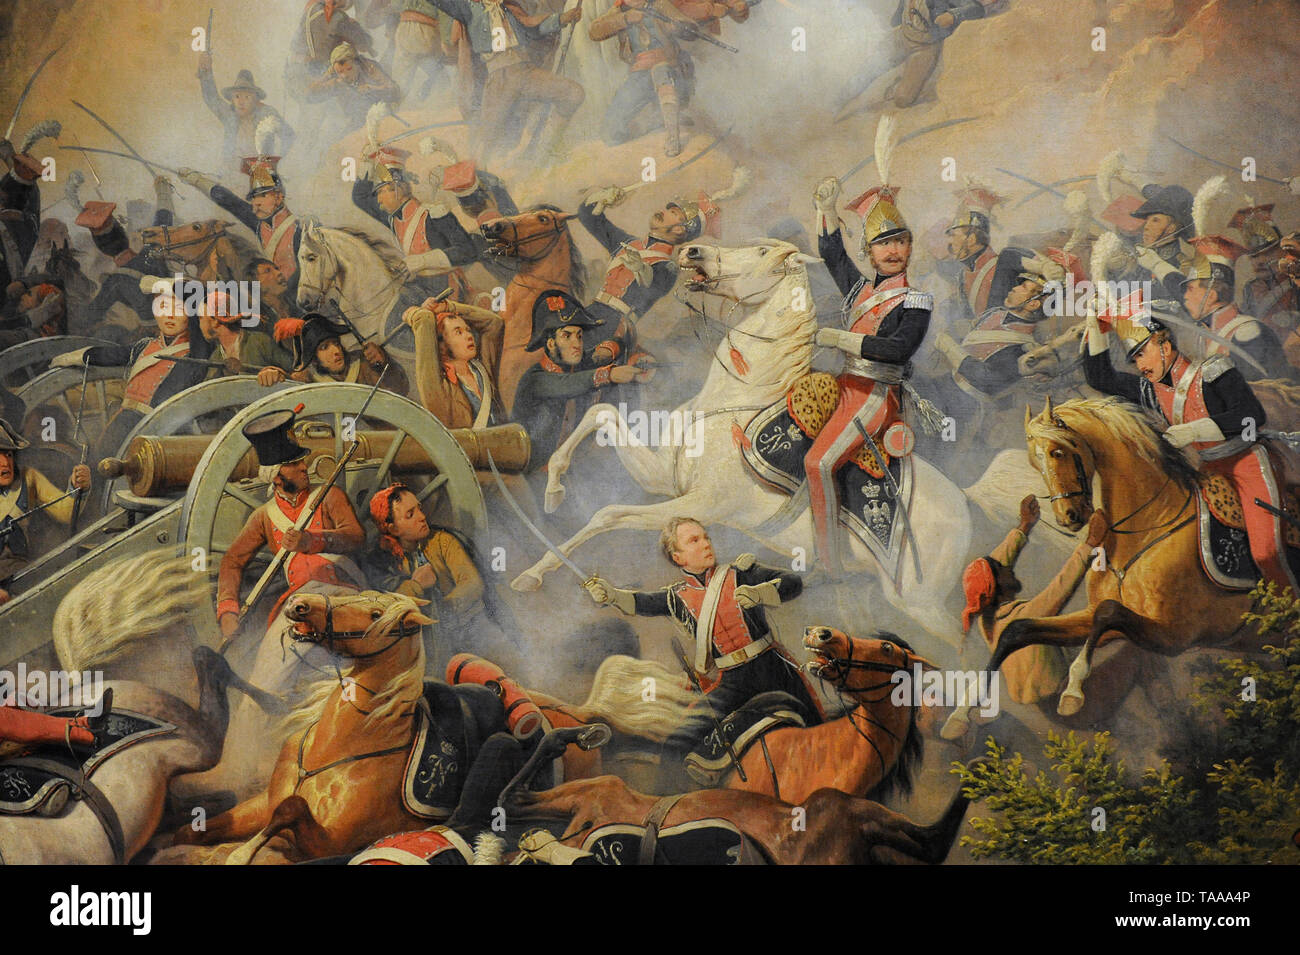 La bataille de Somosierra (Novembre 30, 1808), 1860, d'ici janvier Suchodolski (1797-1875). Détail. Musée national. Varsovie. La Pologne. Banque D'Images